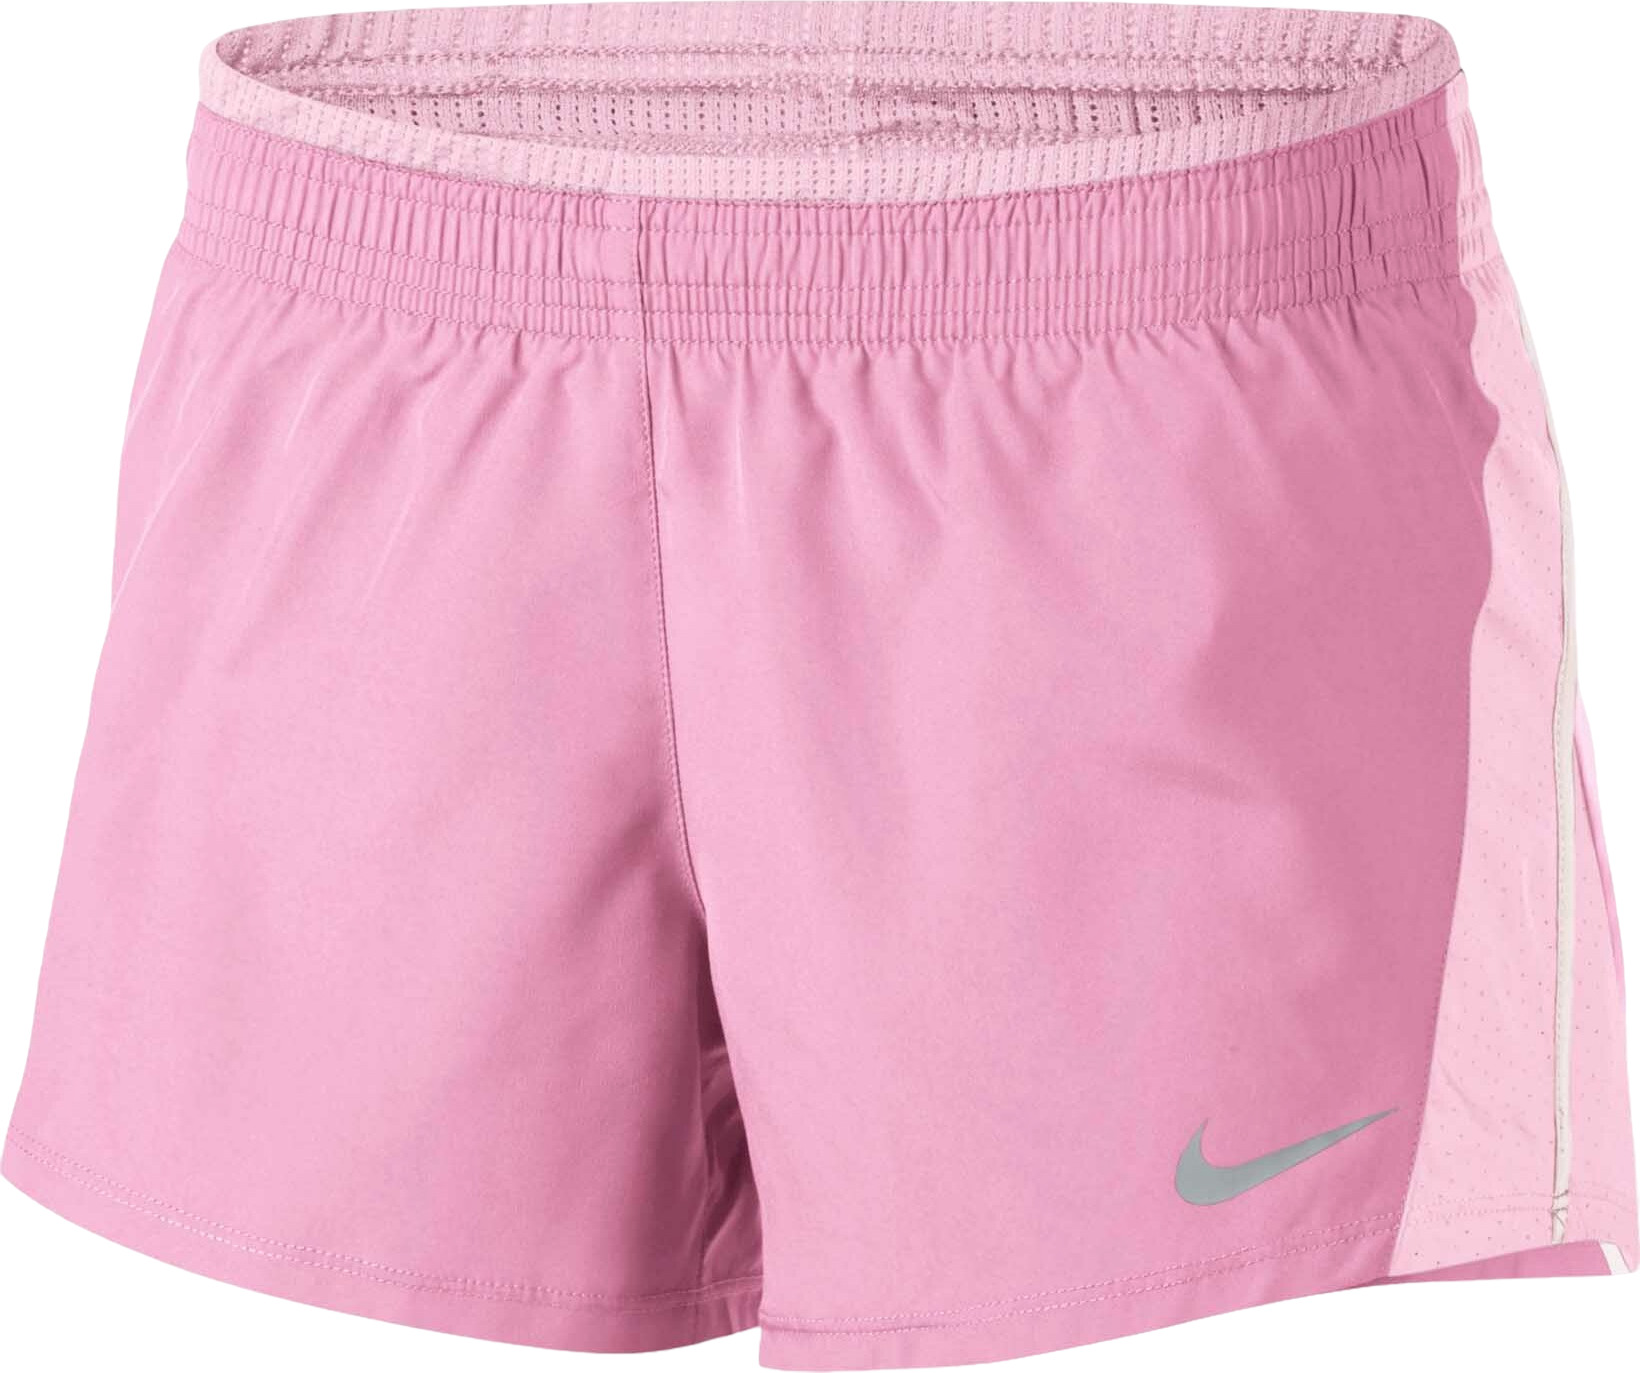 Женские шорты Nike Dry 10k 2 895863-629